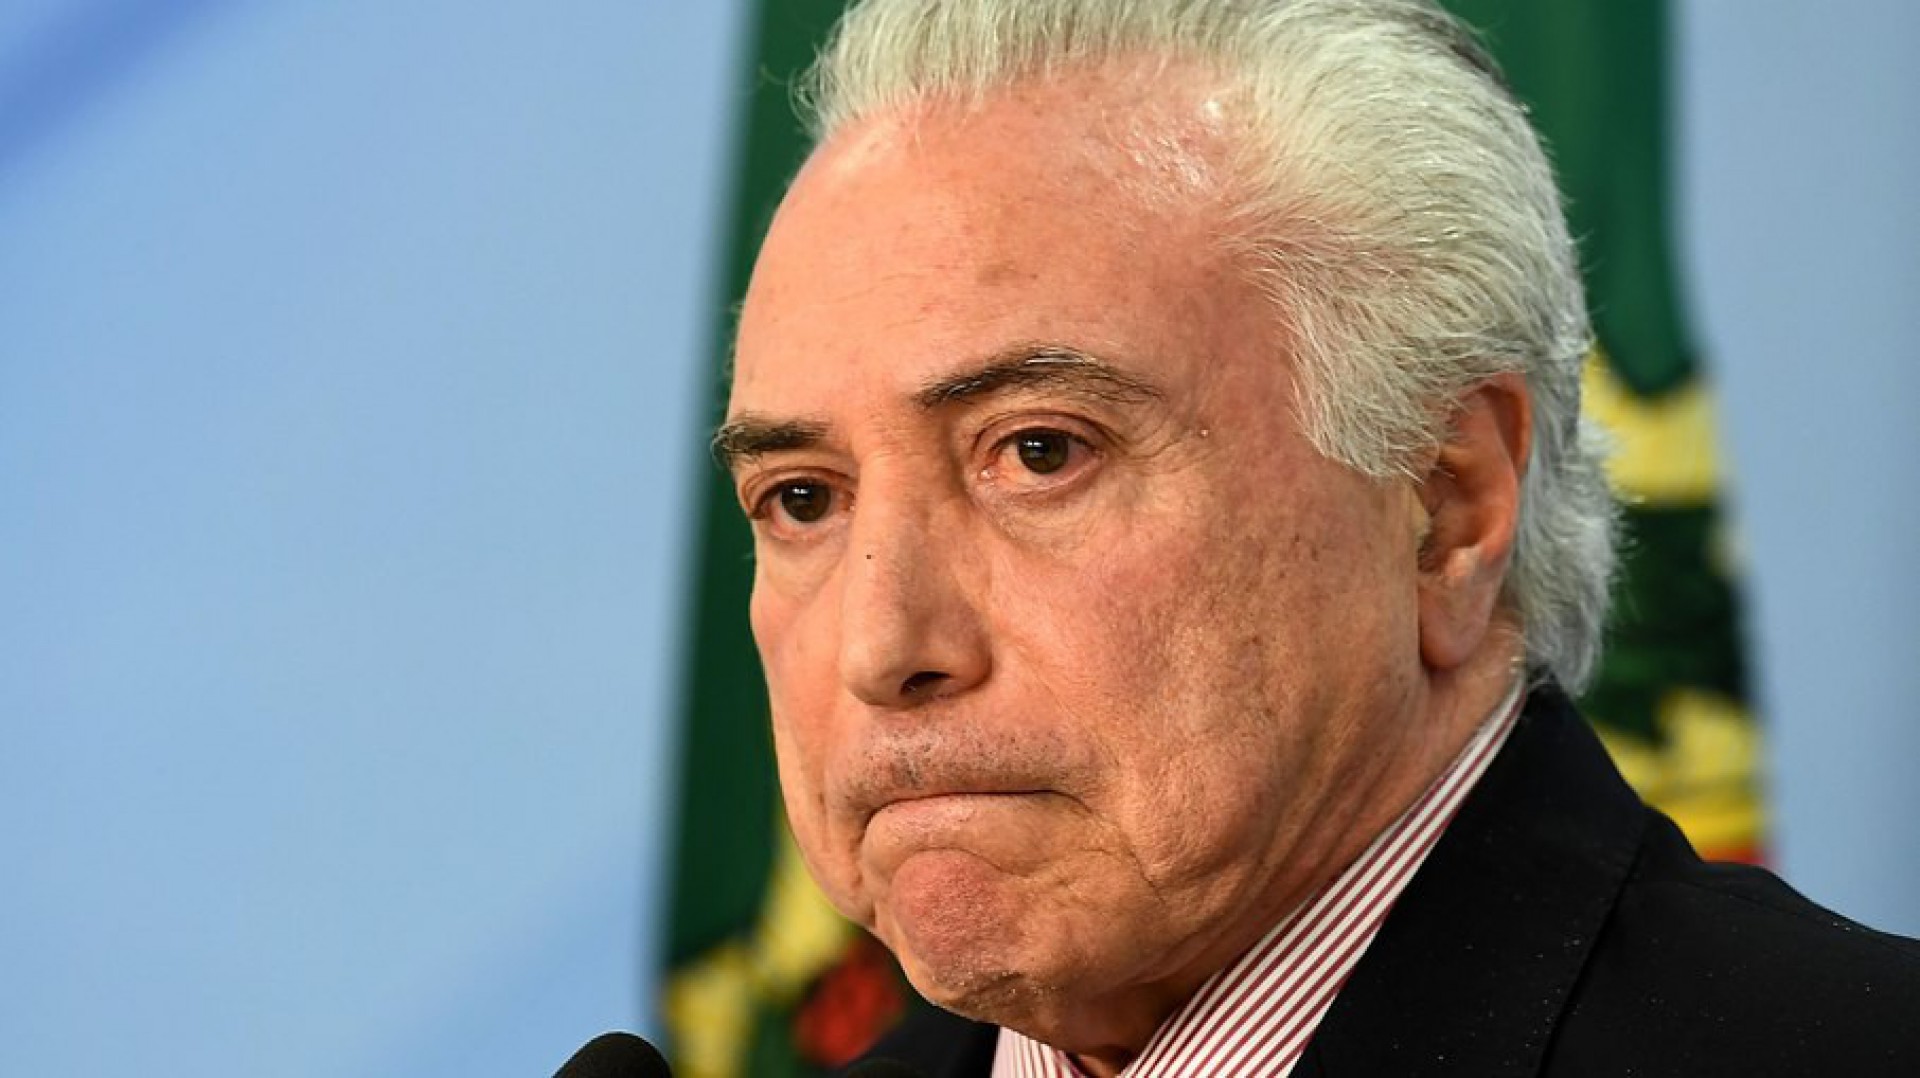 ‘Não se fala assim com ministro; chamar de canalha é impróprio’, diz Temer sobre fala de Bolsonaro